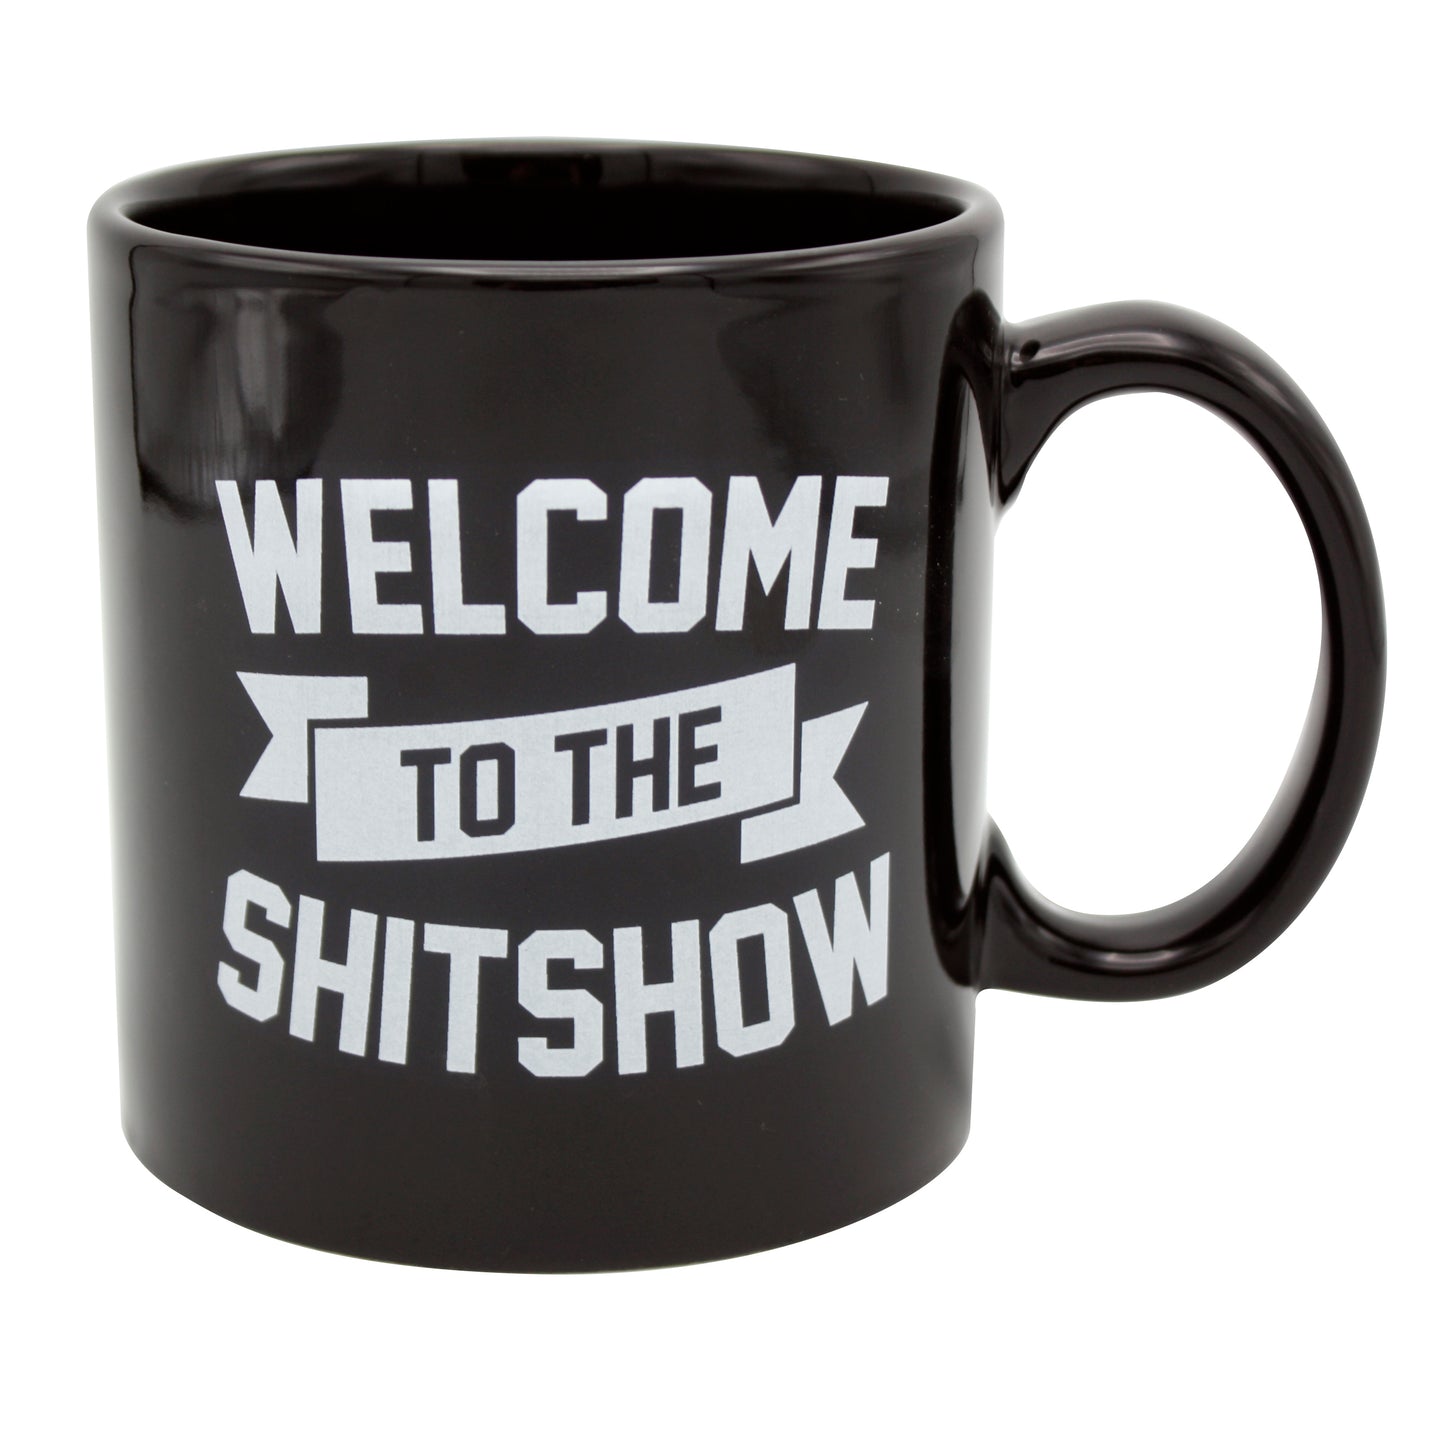 Giant Shit Show Mug